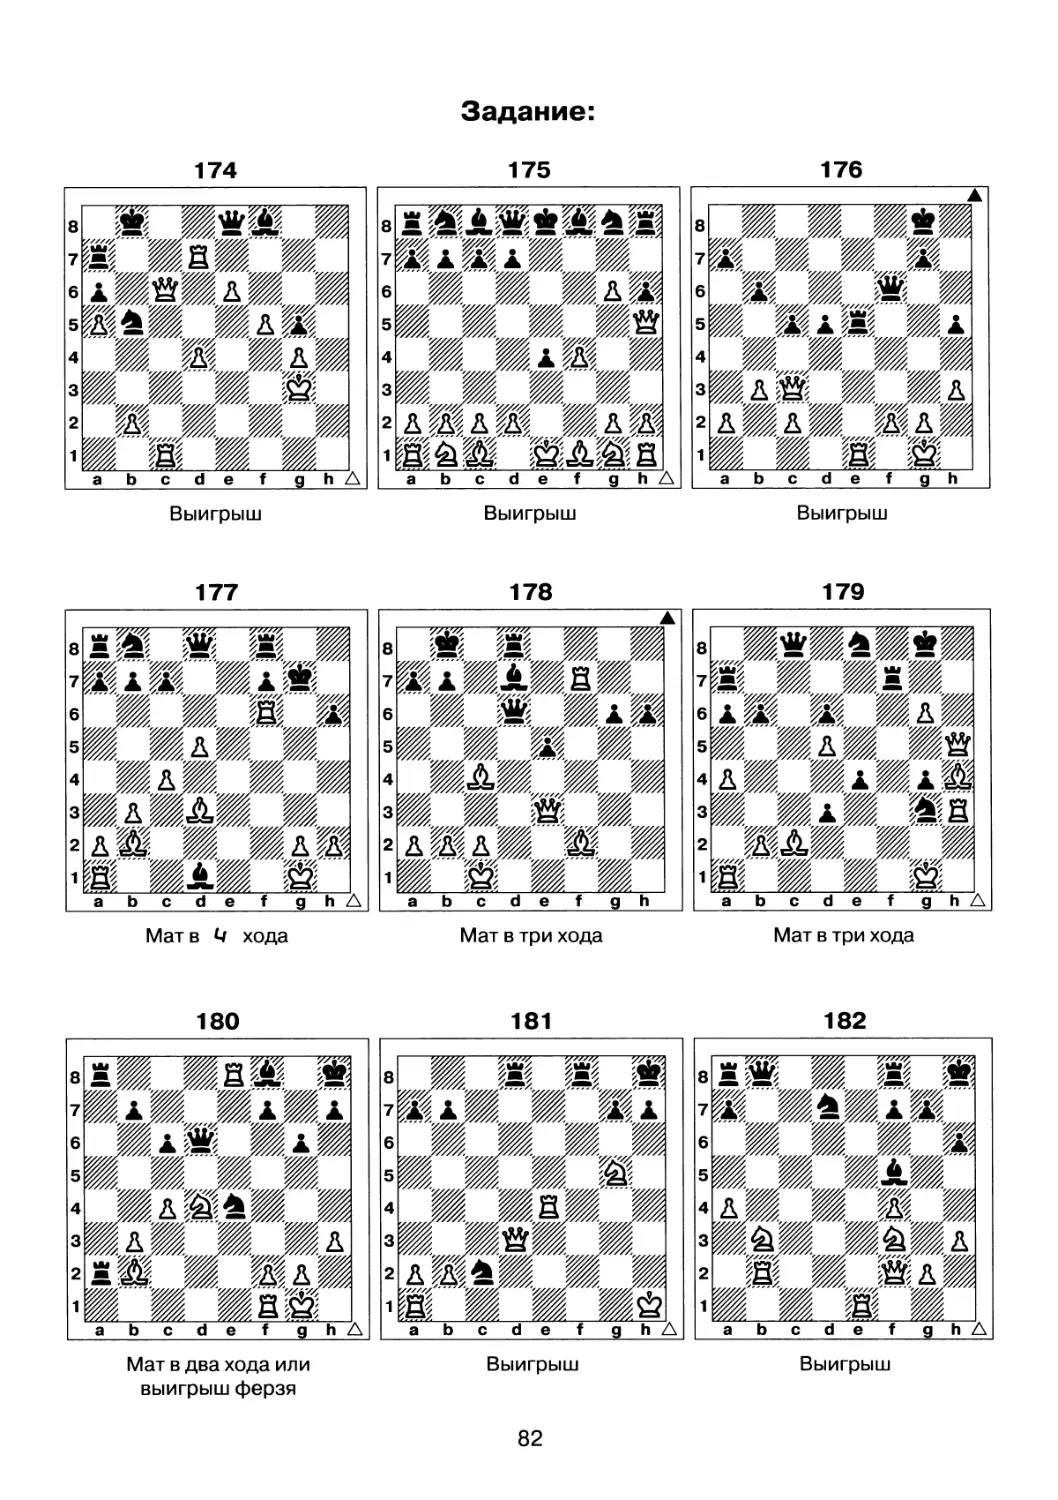 Задачи на двойной удар шахматы для начинающих